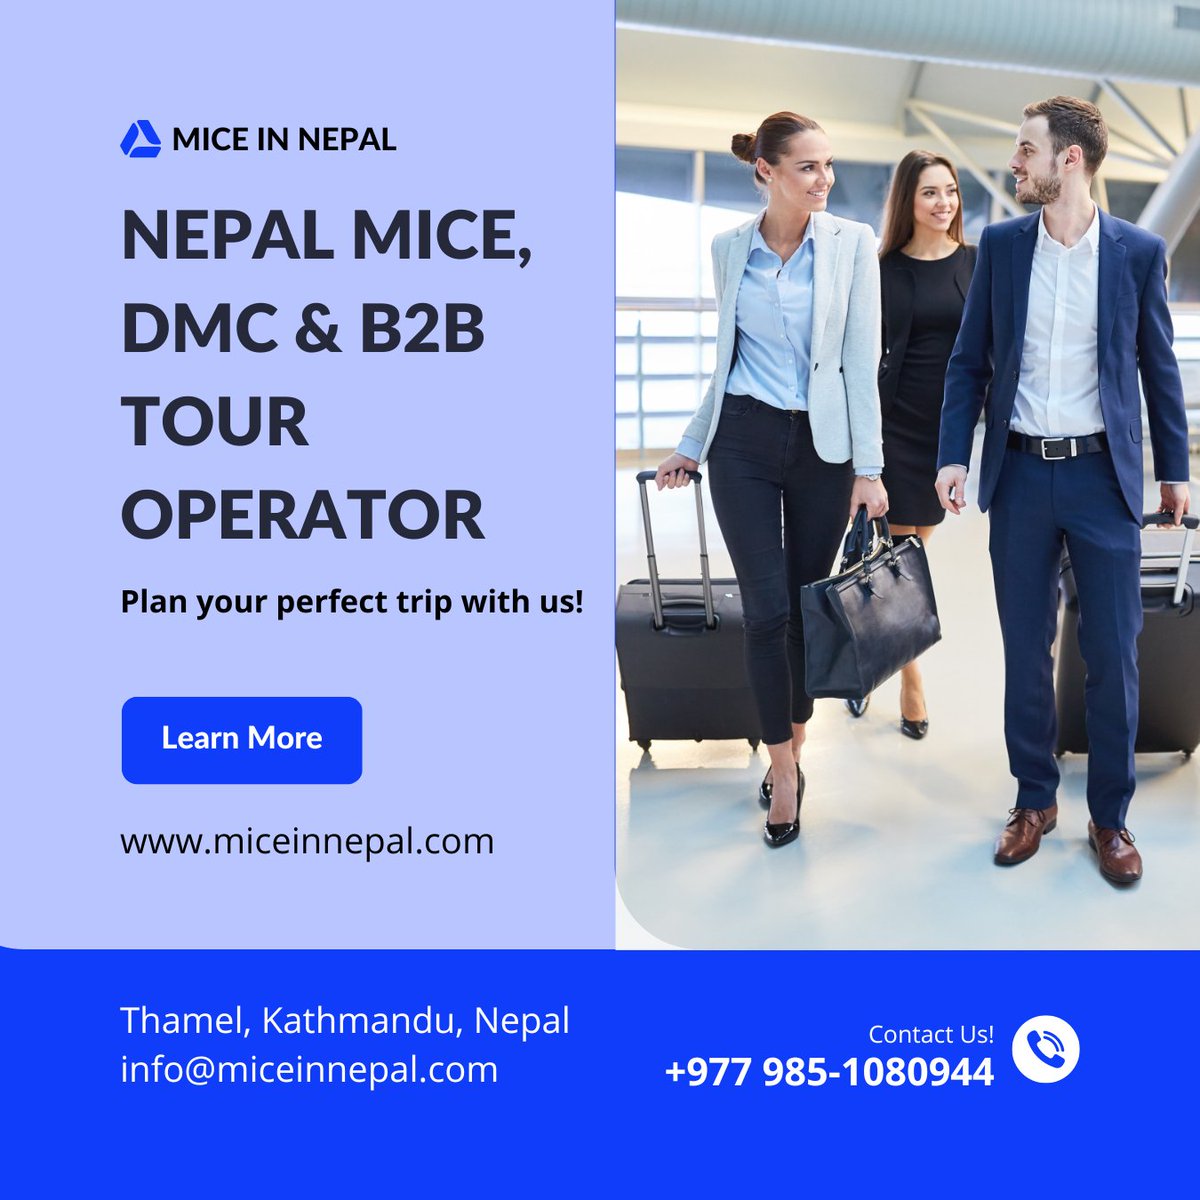 Nepal MICE, DMC & B2B Tour Operator.
miceinnepal.com
#micetourism #nepaldmc #asiadmc #miceplanner #miceevents #corporateevents #incentivetravel #grouptours #grouptravel #nepaltour #b2btravel